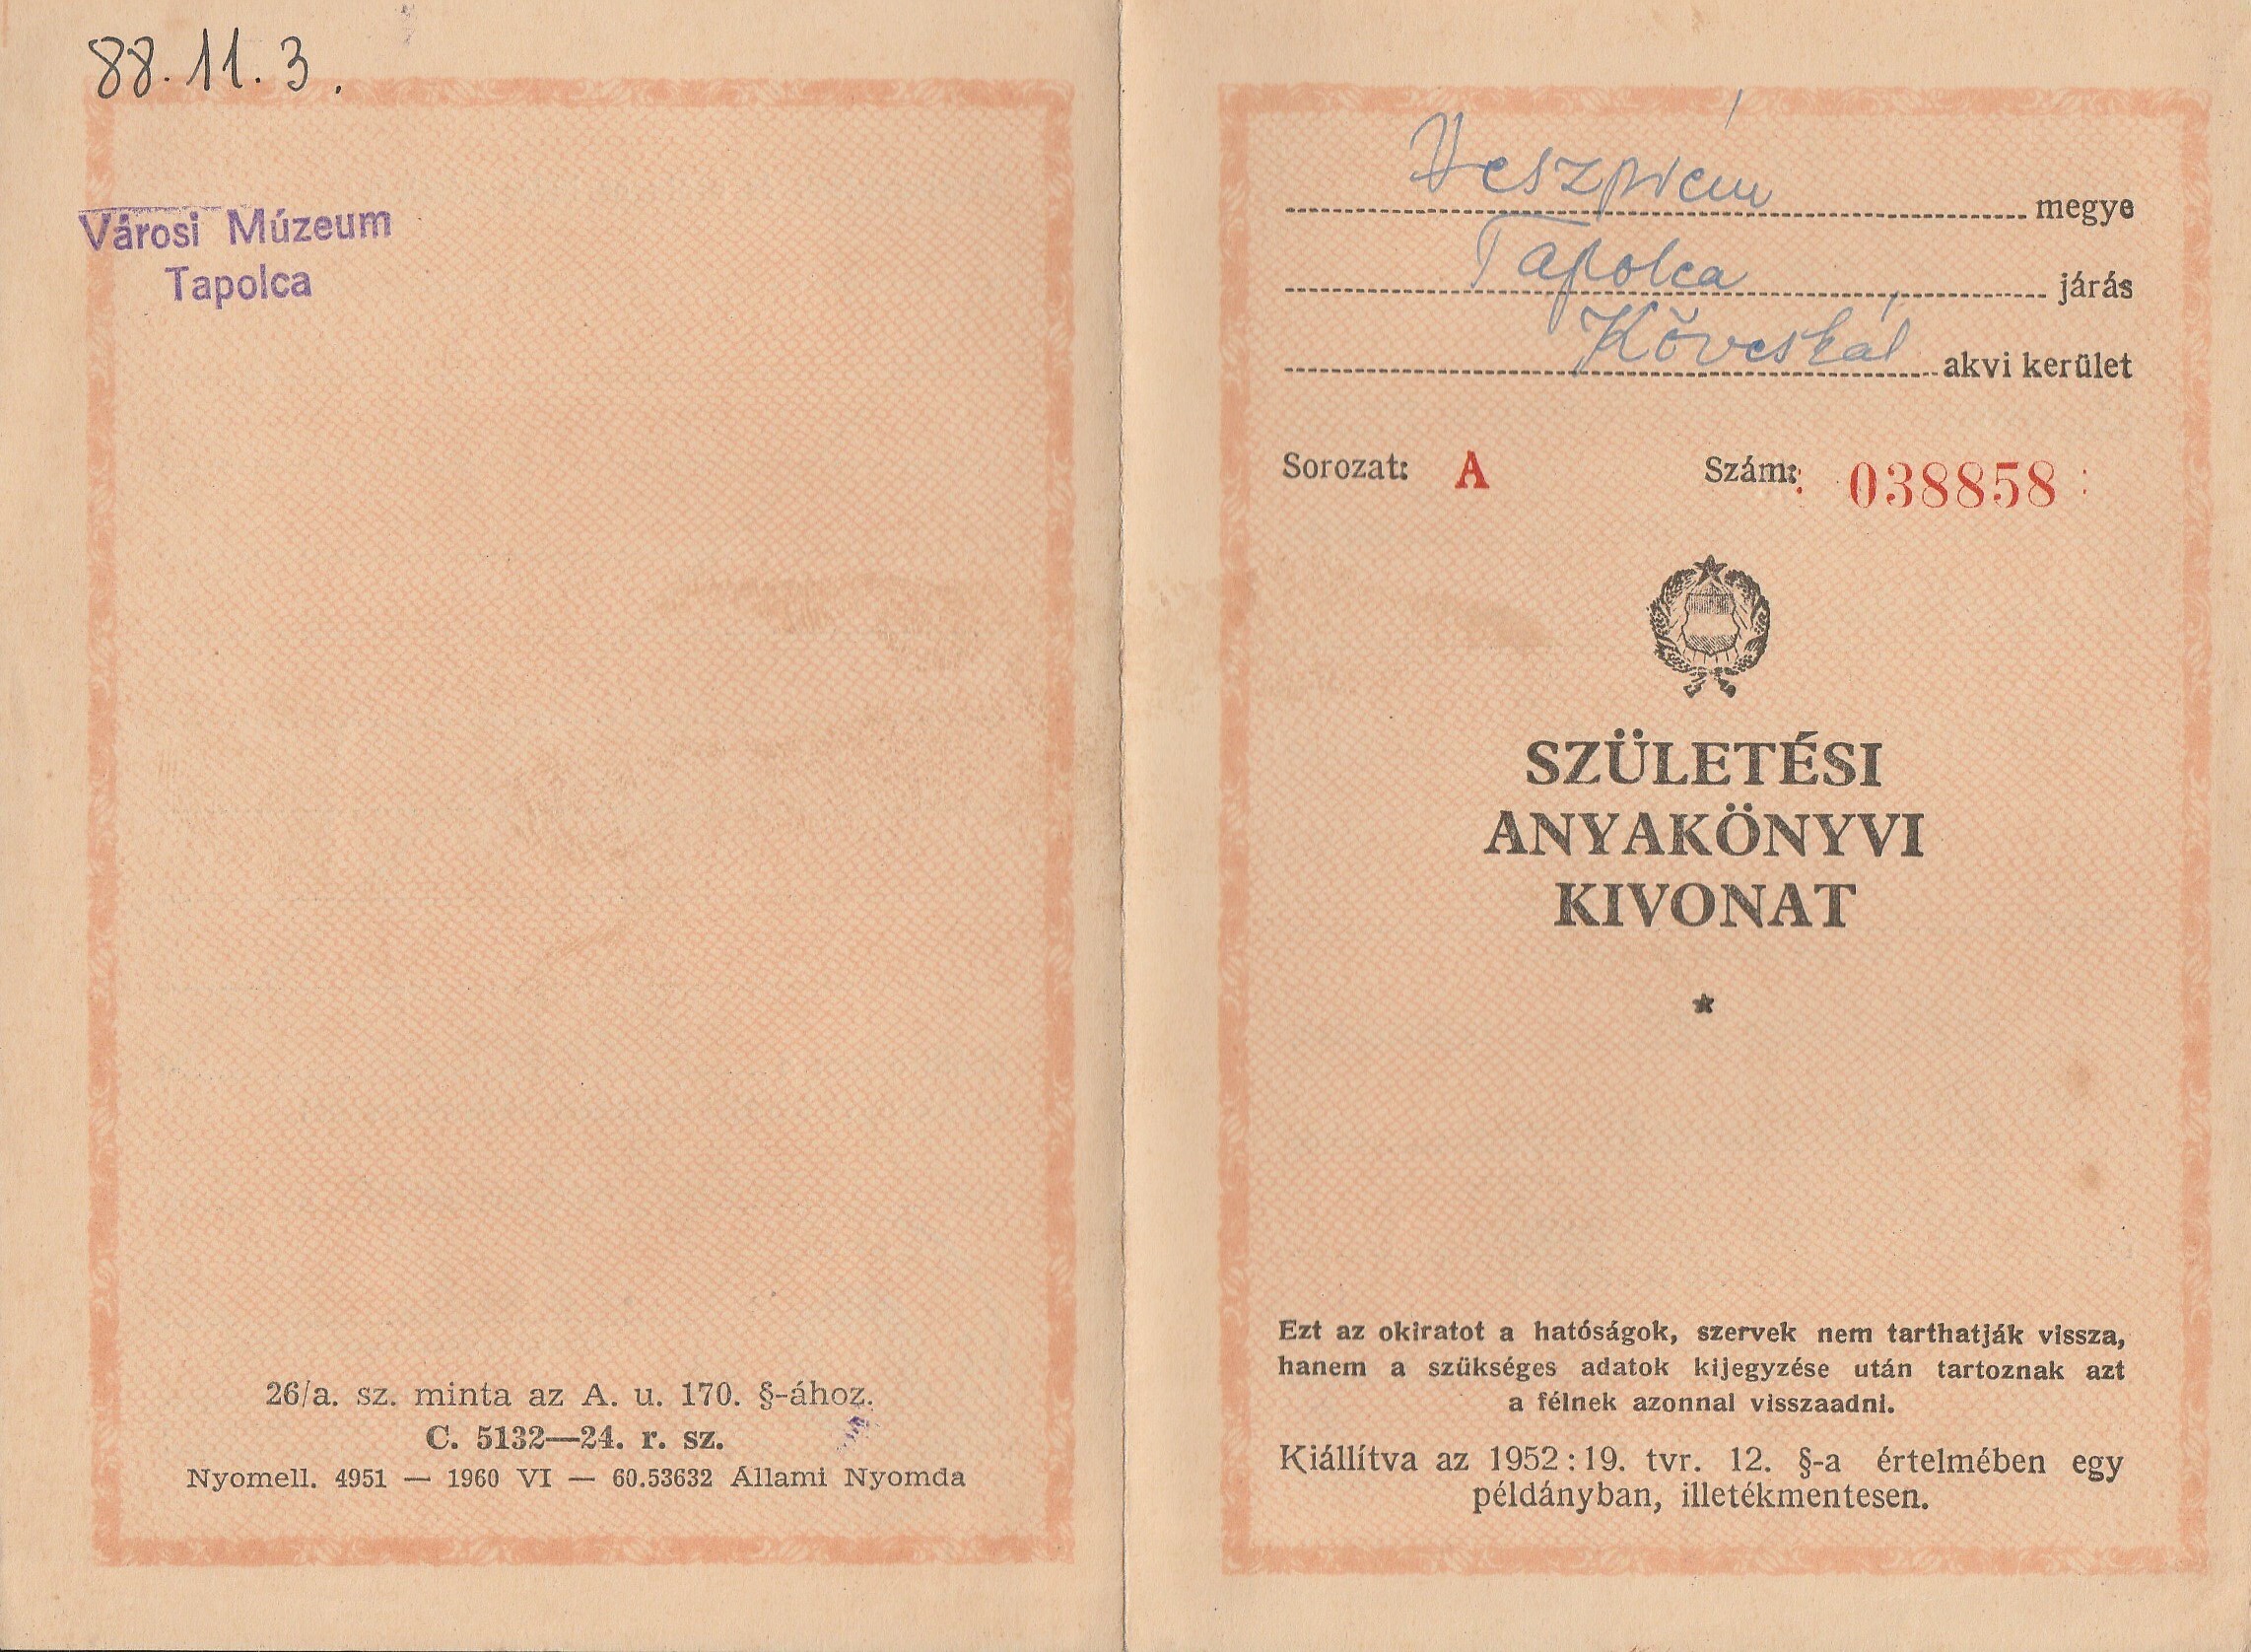 Hegyi Lajos tanító születési anyakönyvi kivonata (Tapolcai Városi Múzeum CC BY-NC-SA)